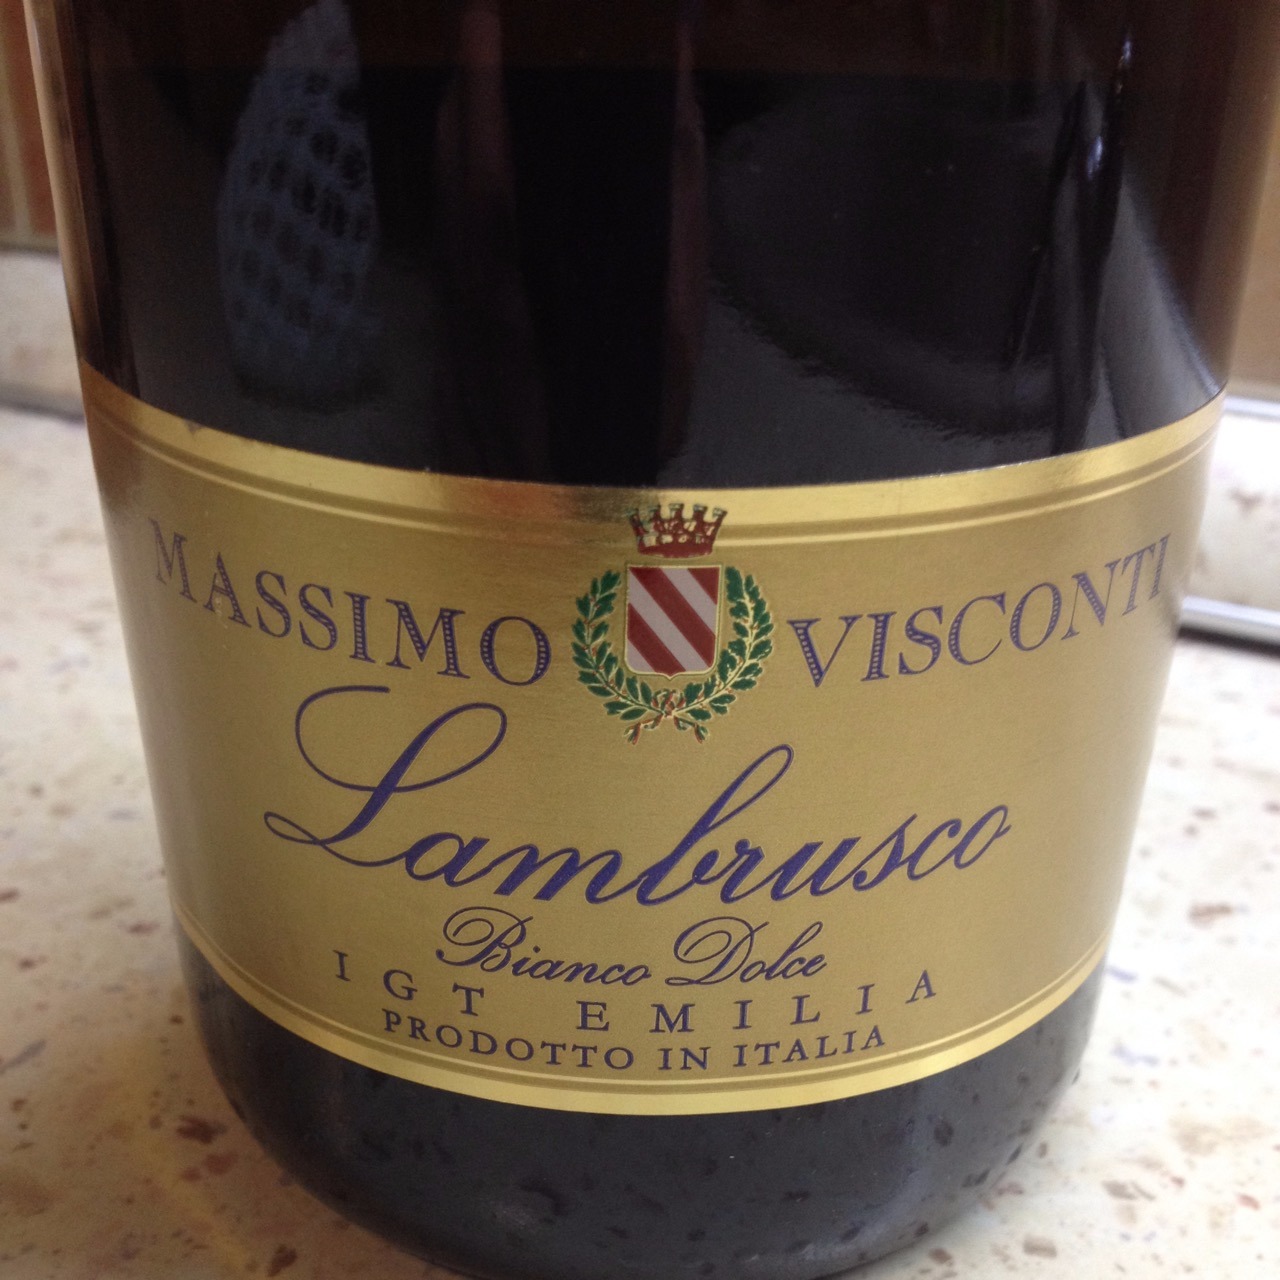 Lambrusco dolce цена. Вино Массимо Висконти Ламбруско. Ламбруско IGT Emilia Bianco.